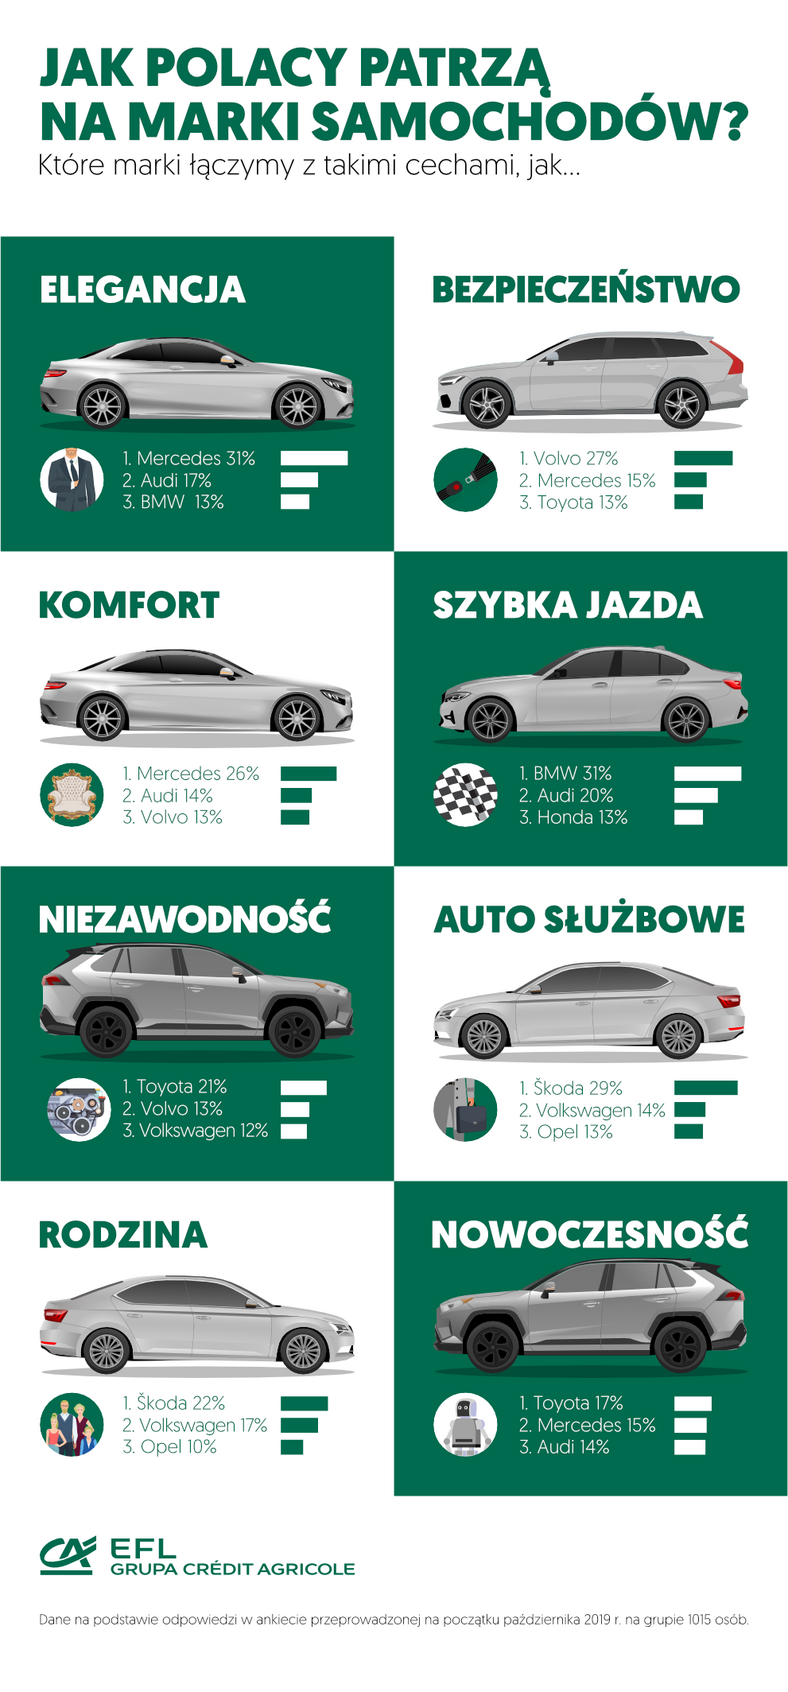 Jak Polacy postrzegają marki samochodów?